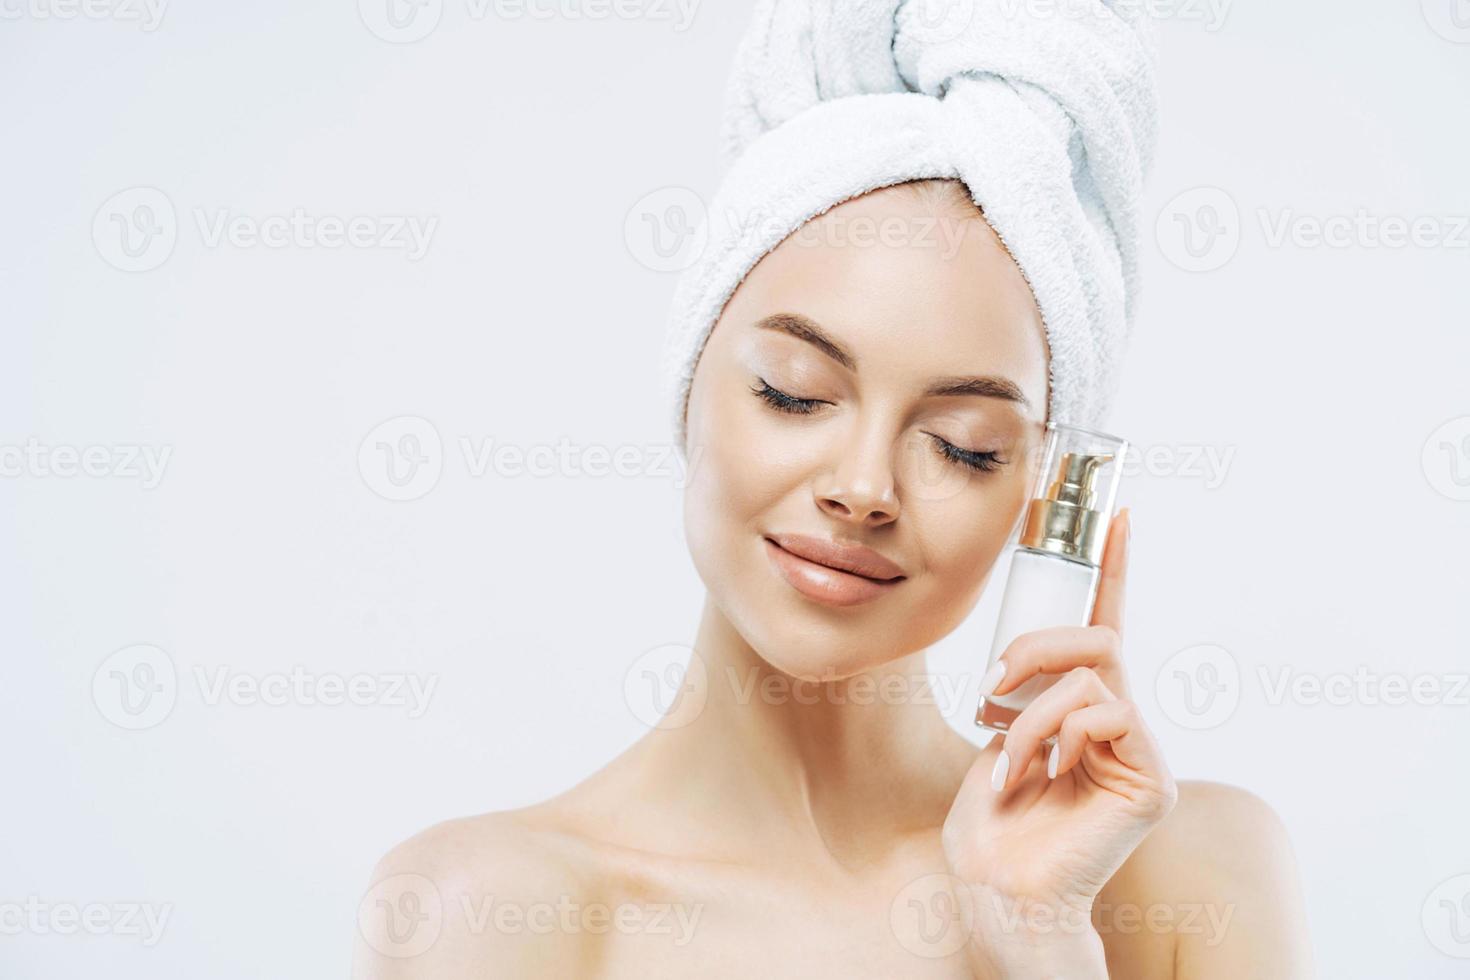 soins de la peau, concept cosmétique. photo d'une jeune femme européenne en bonne santé et détendue se tient les yeux fermés, tient une bouteille de produit cosmétique pour peau élastique, pose à moitié nue sur fond blanc.